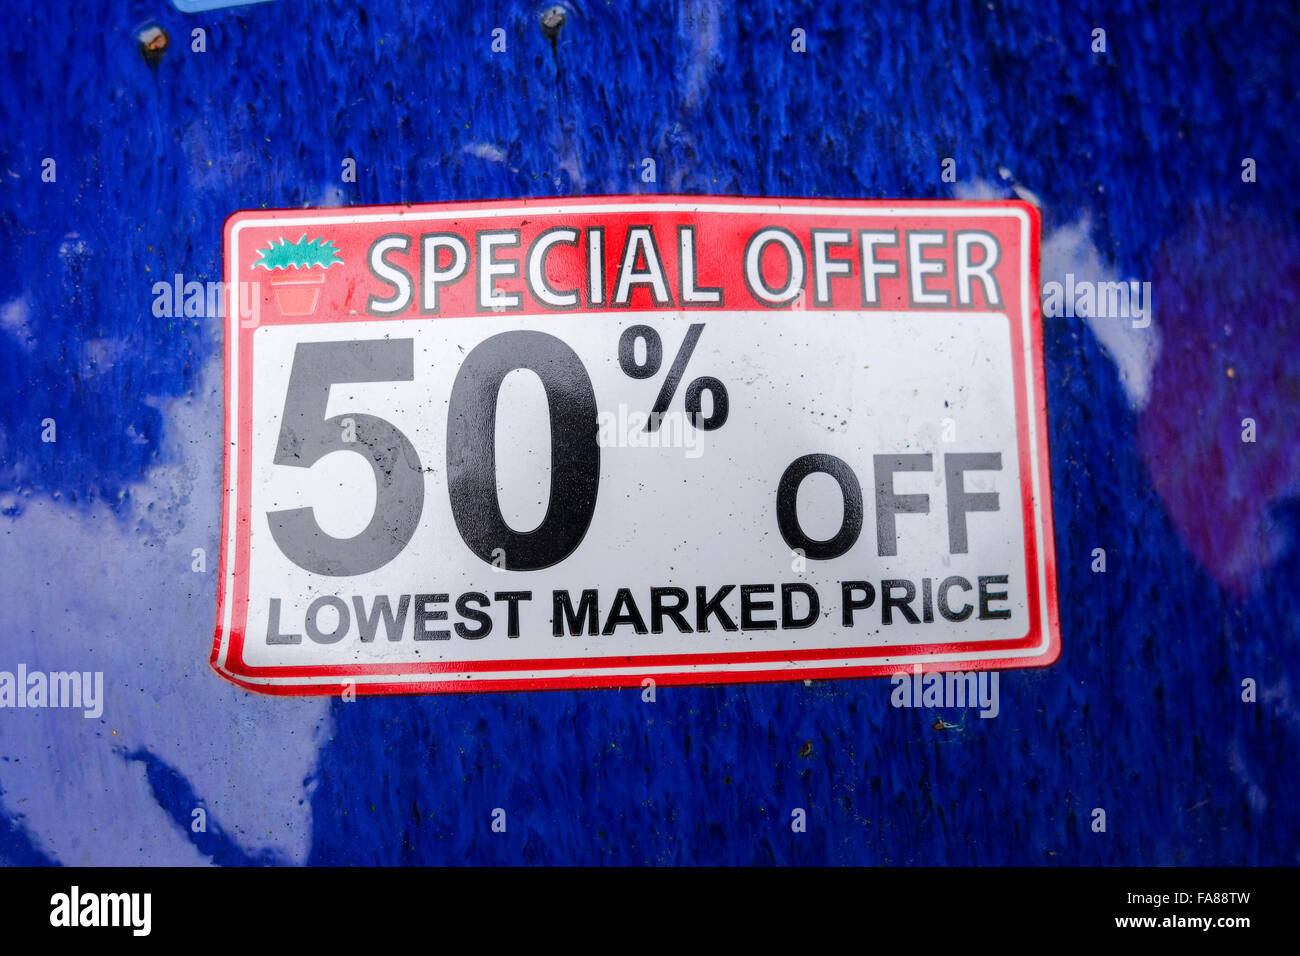 Ein 50 % Rabatt auf niedrigsten Preis Spezialangebot Aufkleber auf einer blauen glänzenden Oberfläche Stockfoto